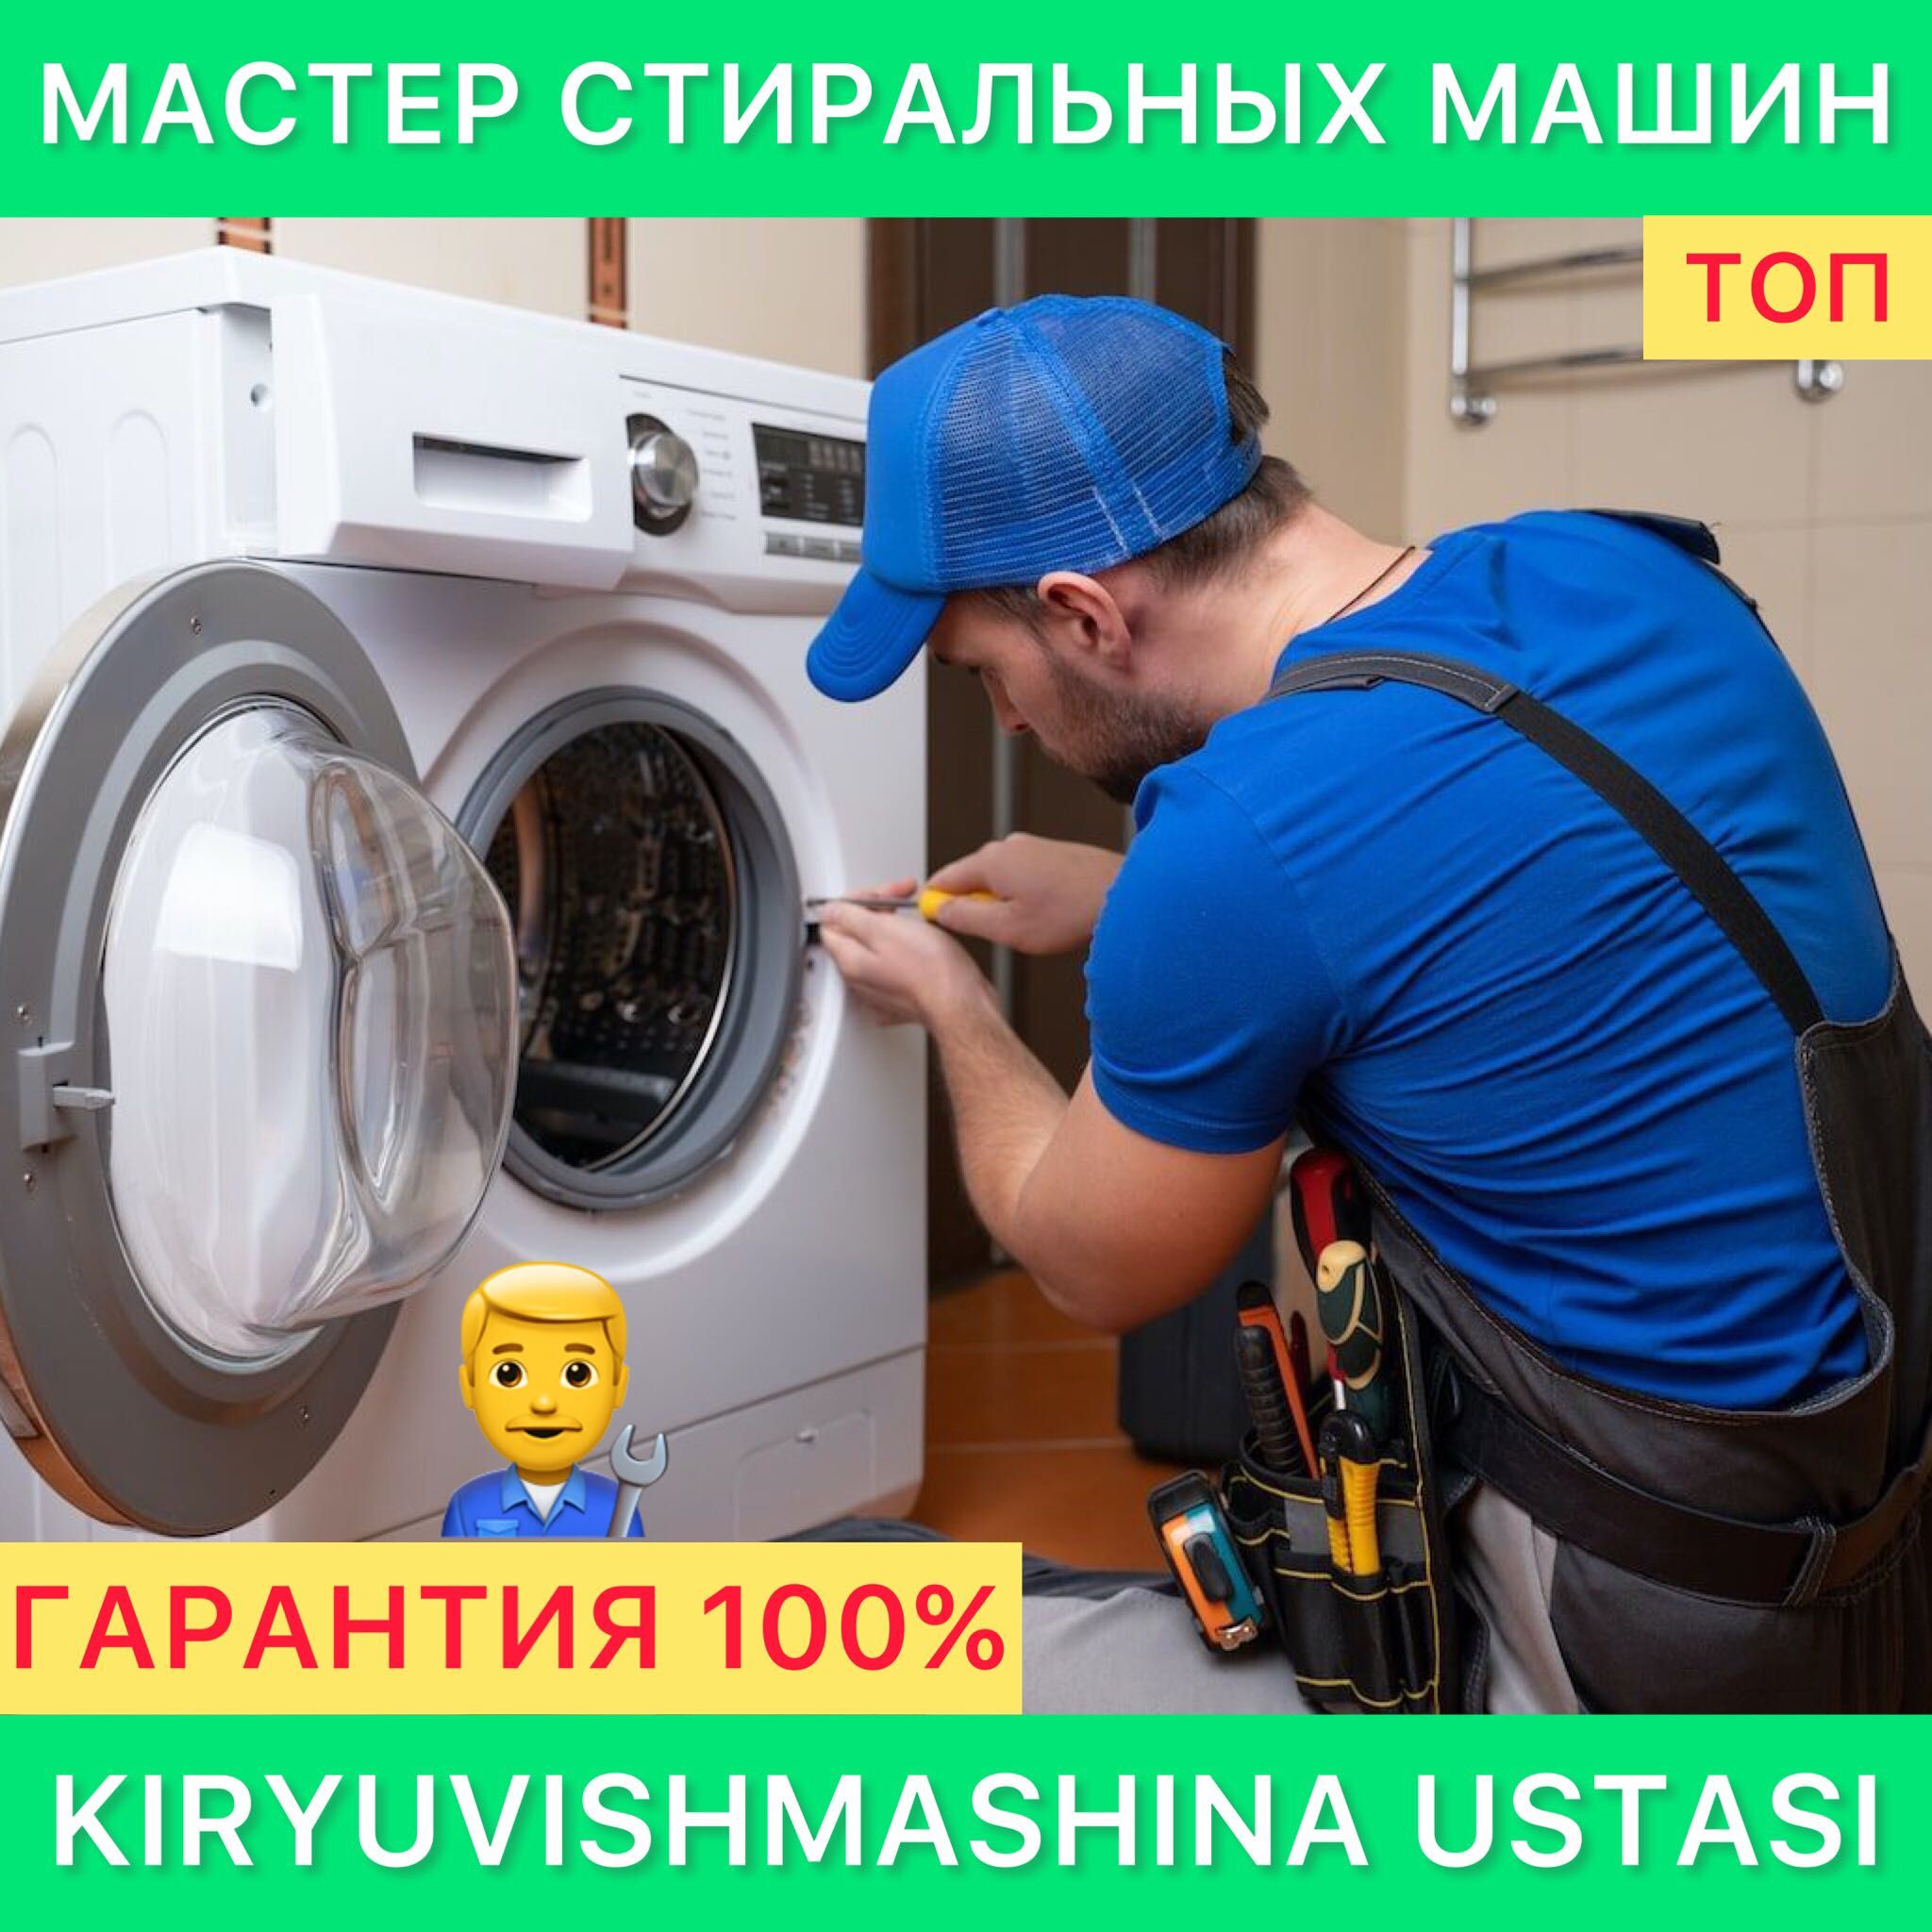 Kir moshina ustasi Сервис стиральных машин